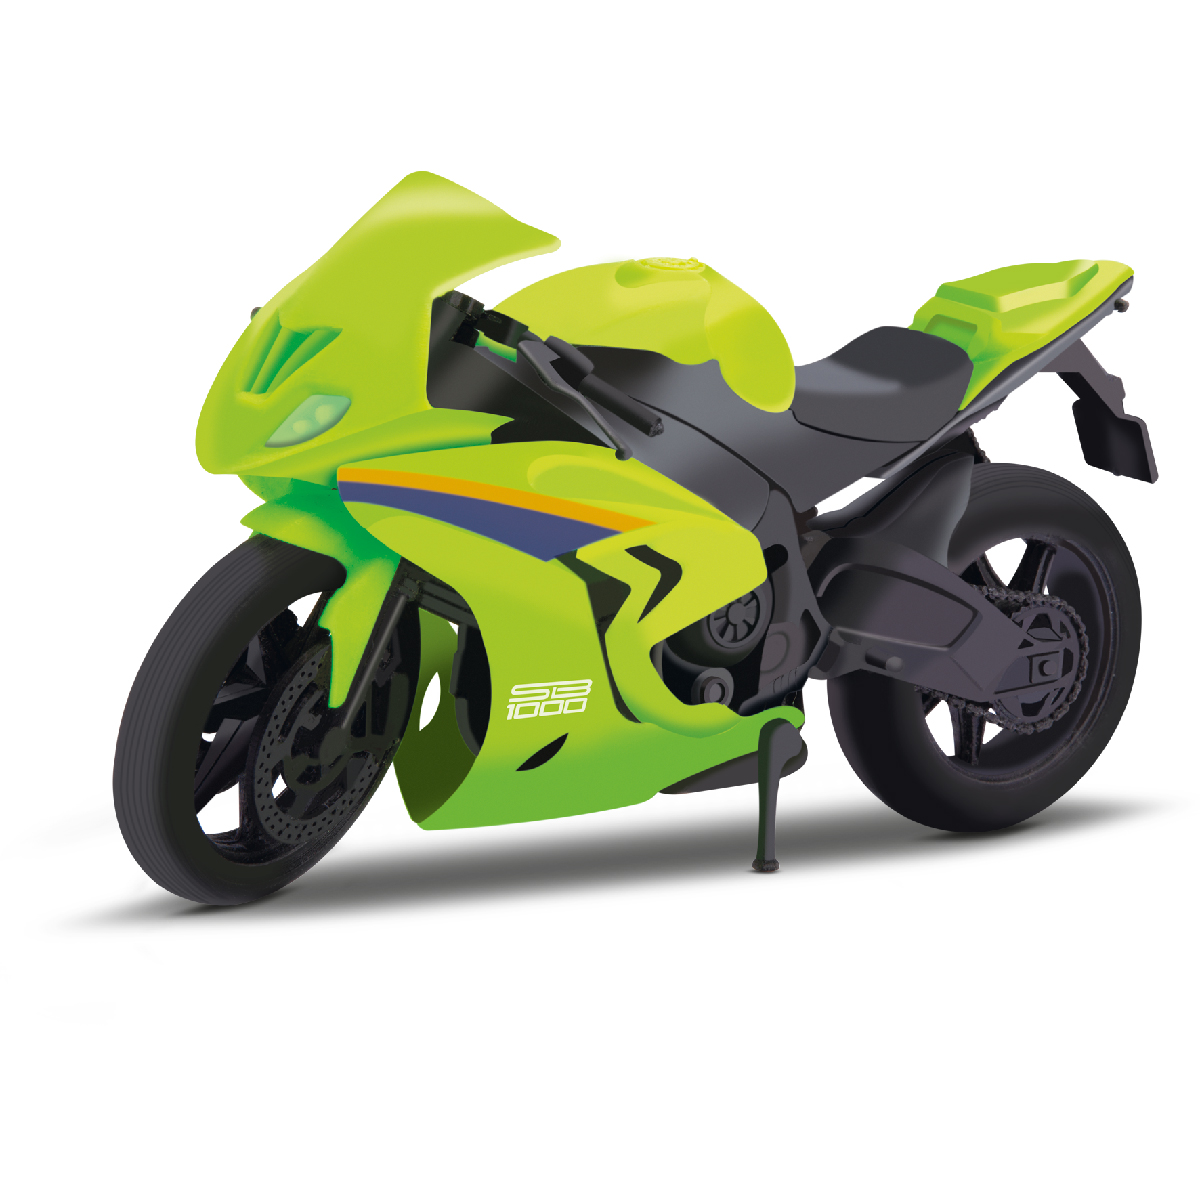 SB 1000 Motorcycle